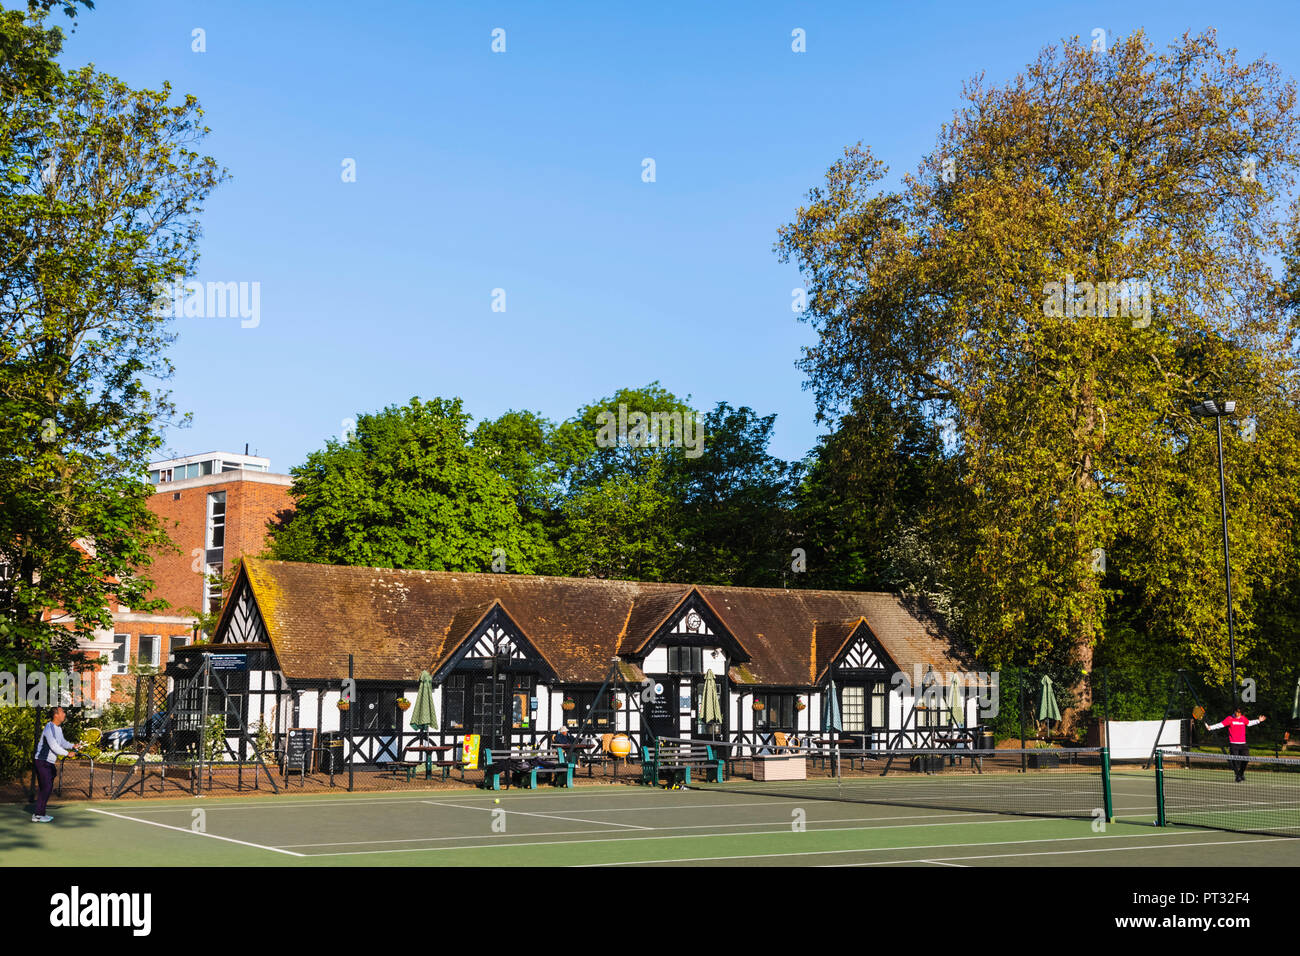 England, London, Regent's Park, Regent's Park Tennis Centre, Men Playing Tennis Stock Photo